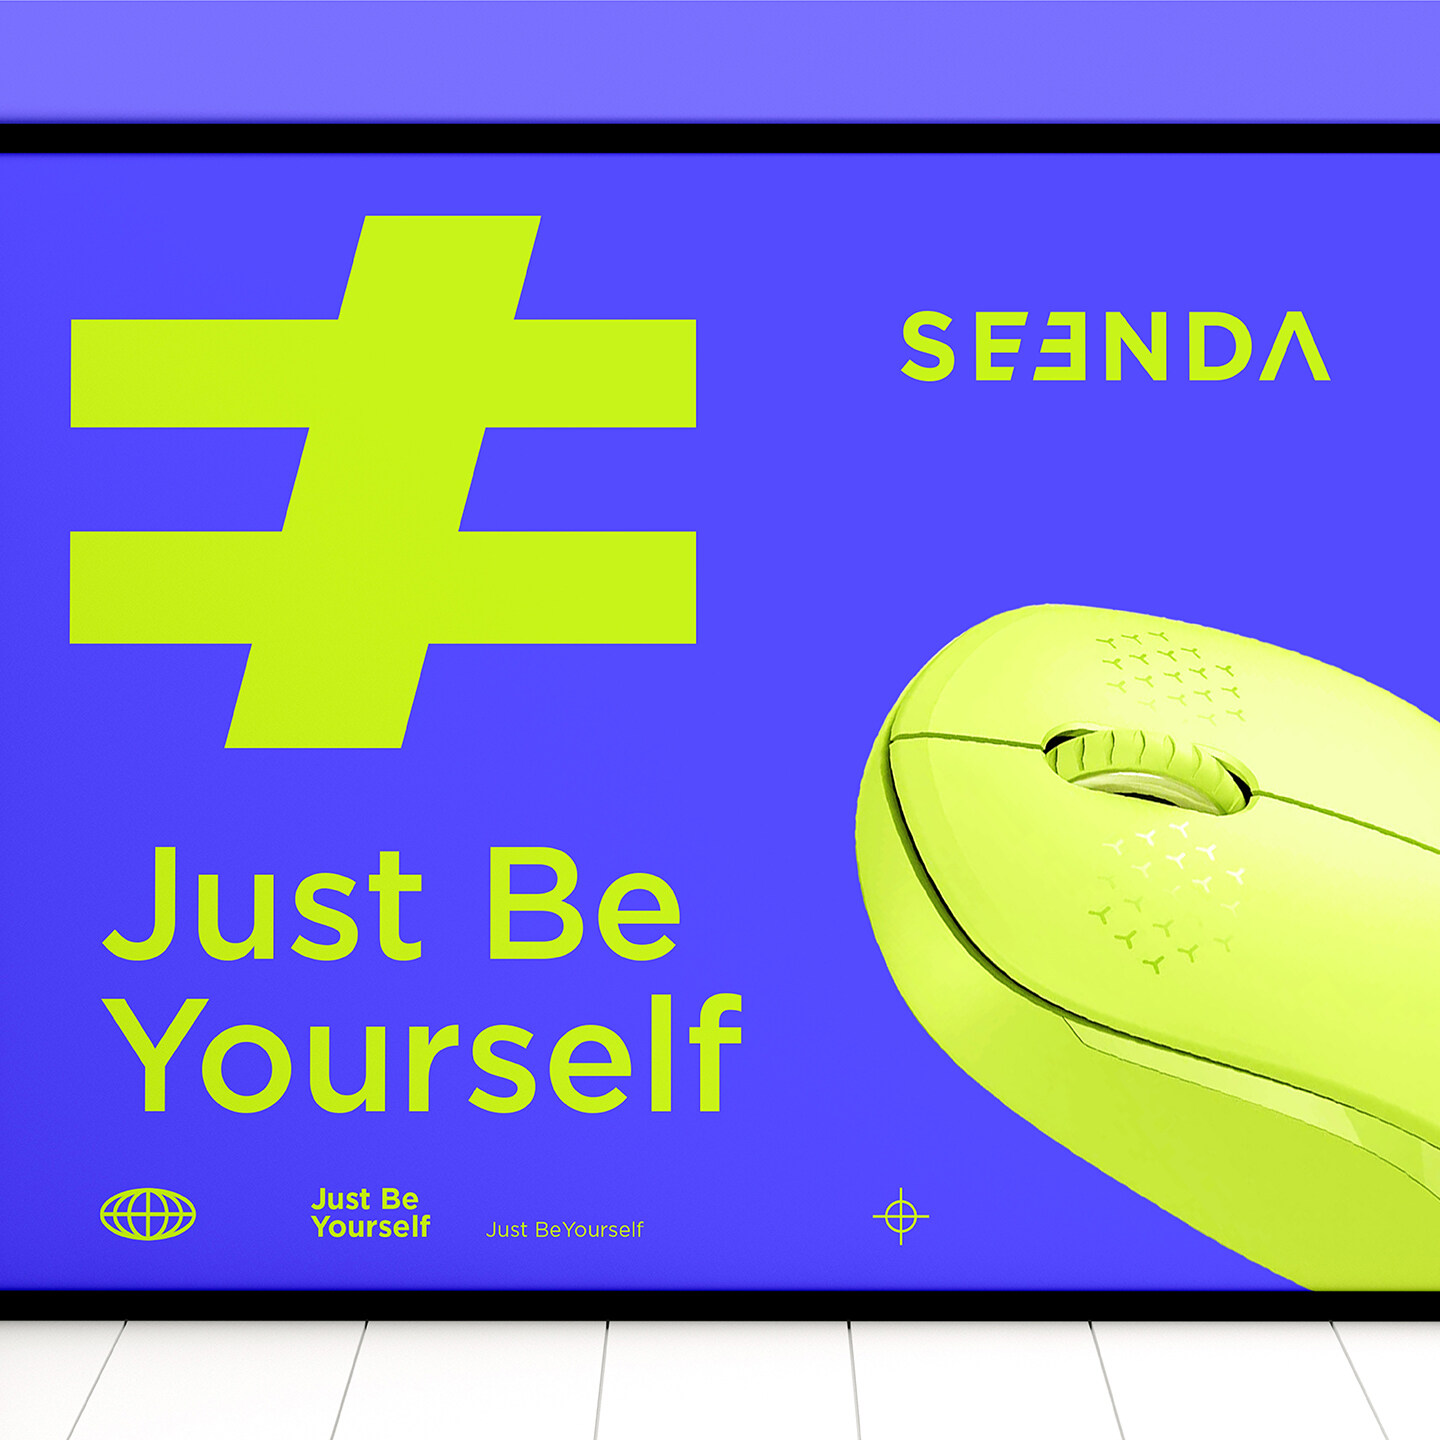 键鼠产品品牌设计-SEENDA 键鼠产品品牌搭建-产品外观设计